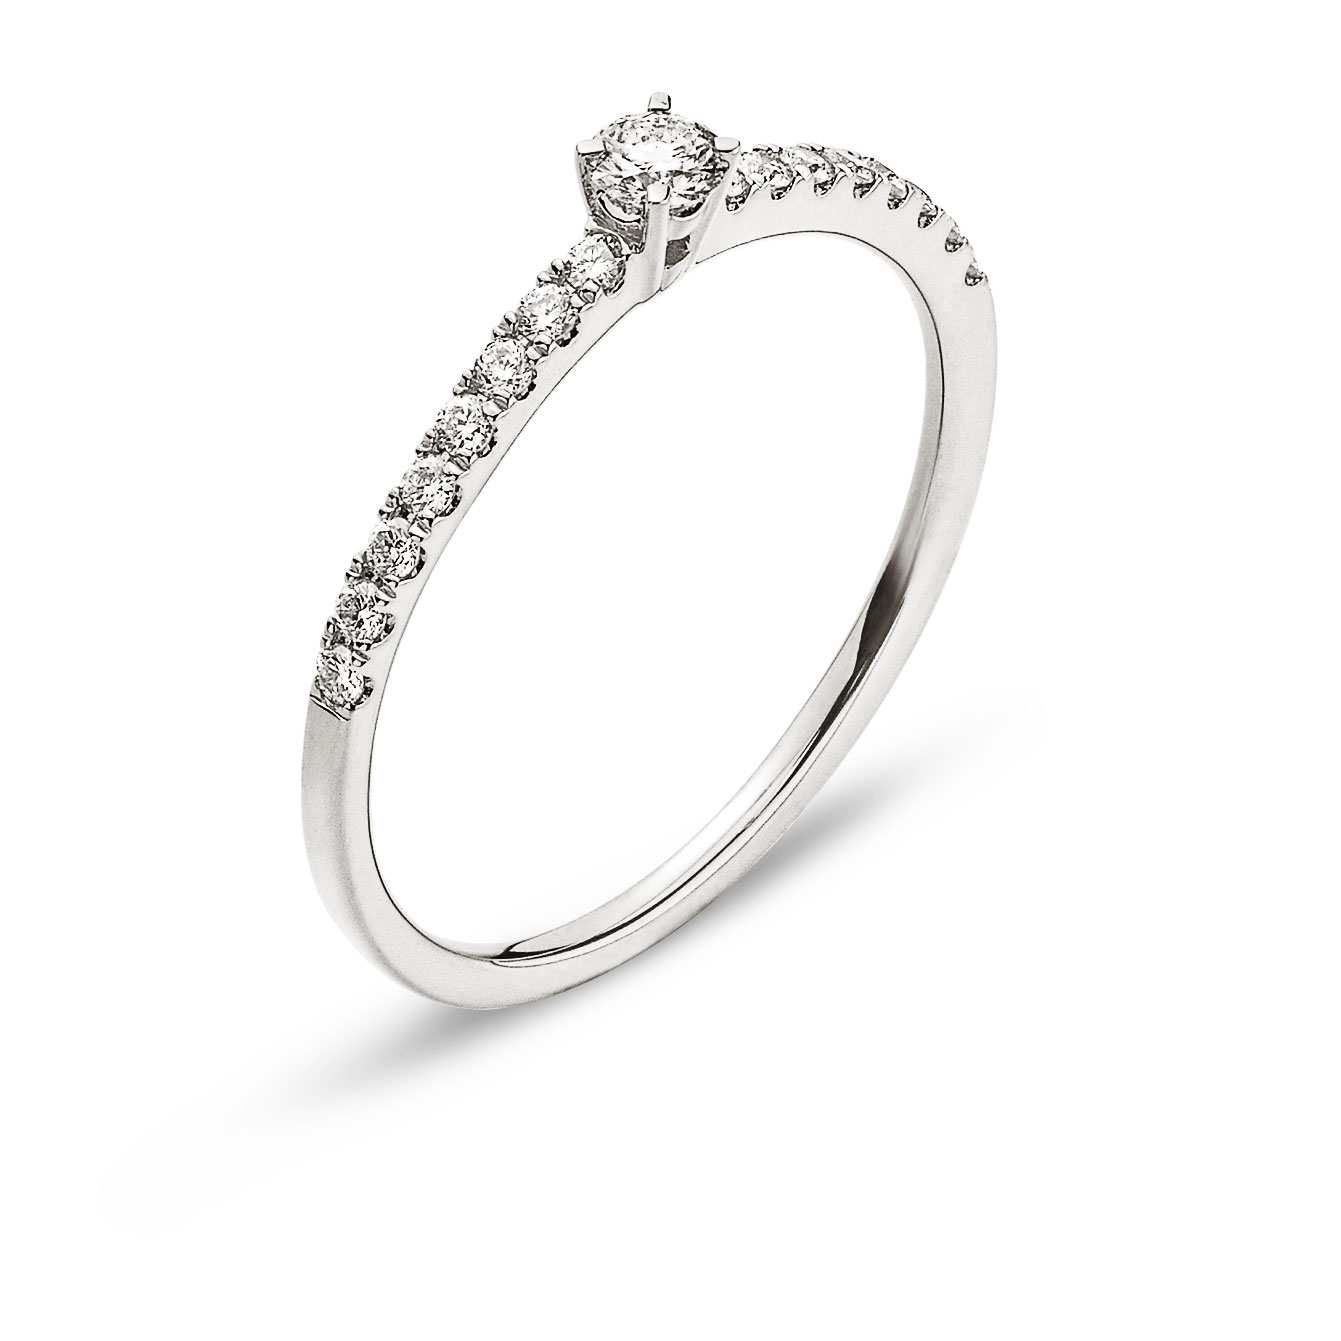 AURONOS Prestige Ring white gold 18K diamonds 0.25ct